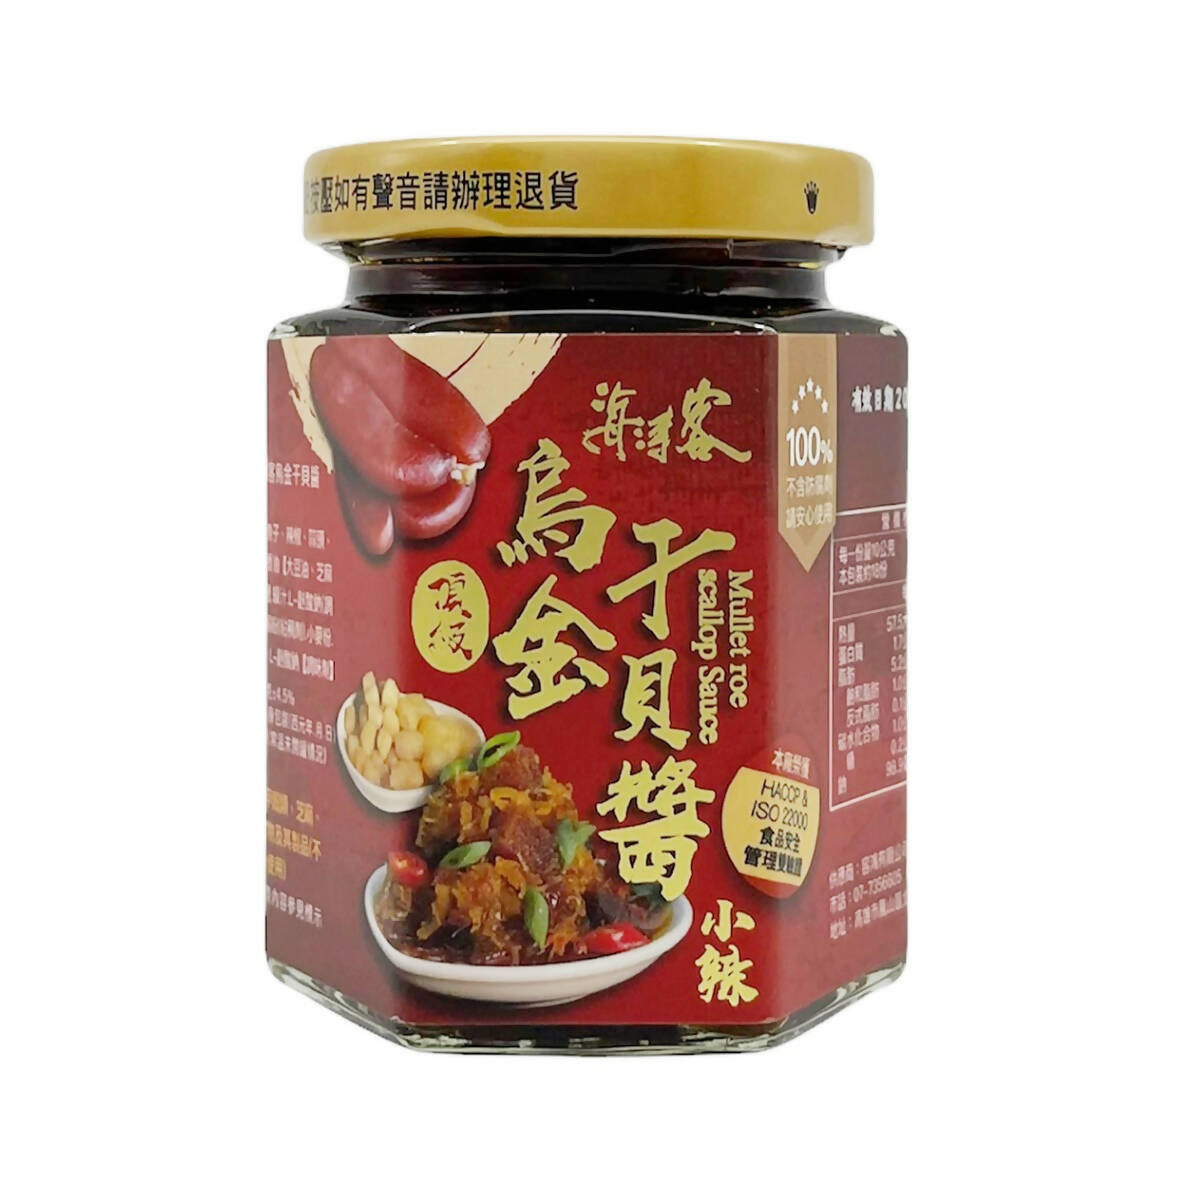 Taiwan Direct Mail【Hai Tao Ke】 HAITAOKE Ujin Scallop Sauce (Small Spicy) 180g 